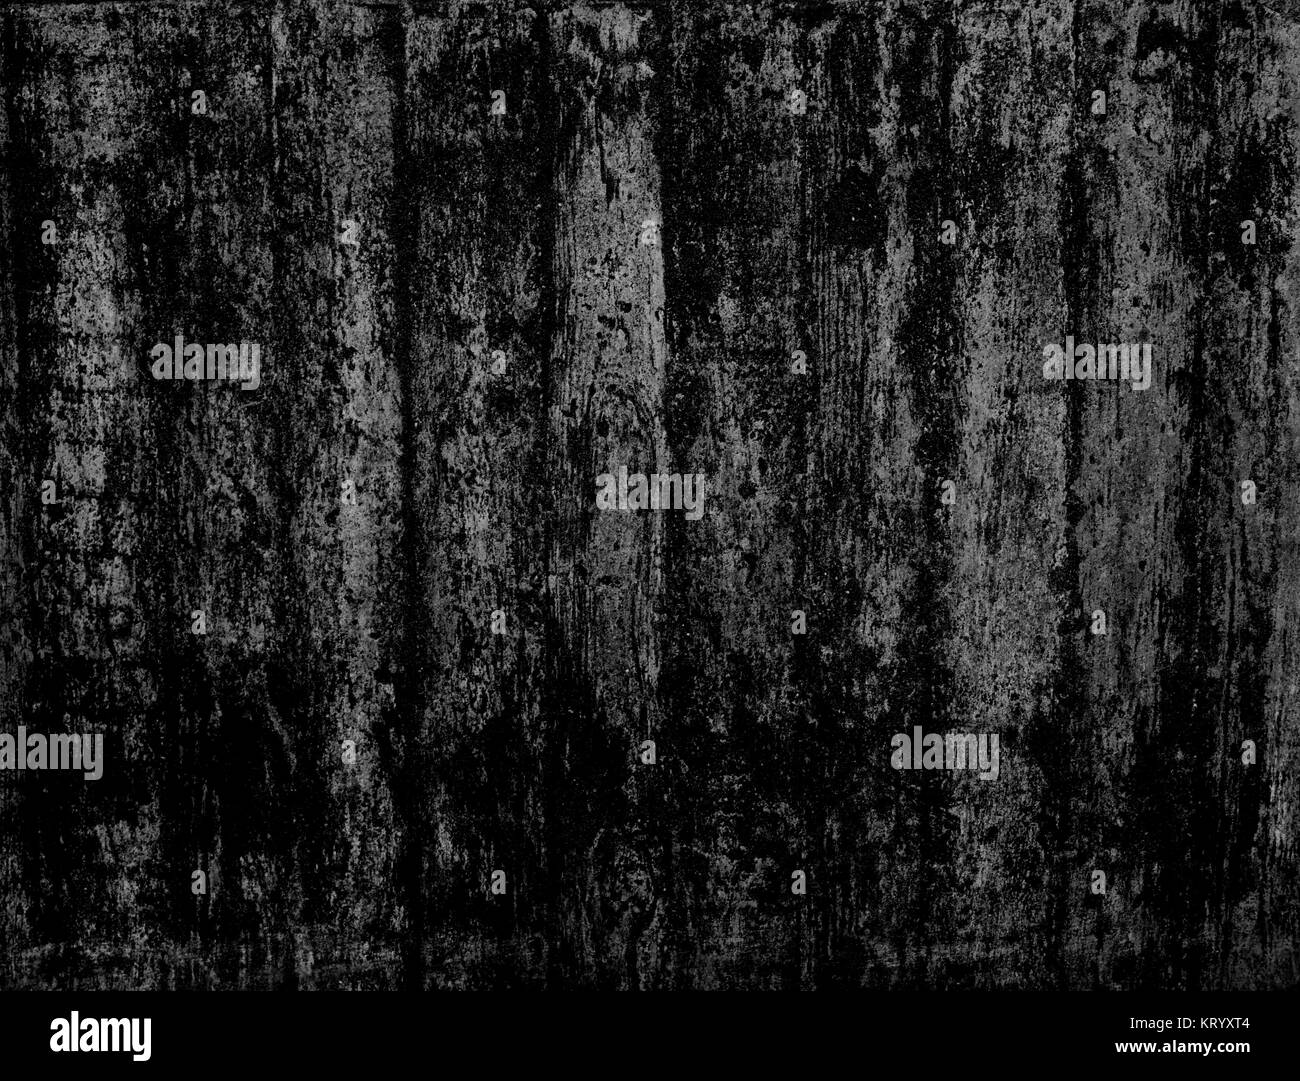 Sehr dreckiger verschmutzter Hintergrund mit Kratzern und schwarzer dunkler Farbe Stock Photo